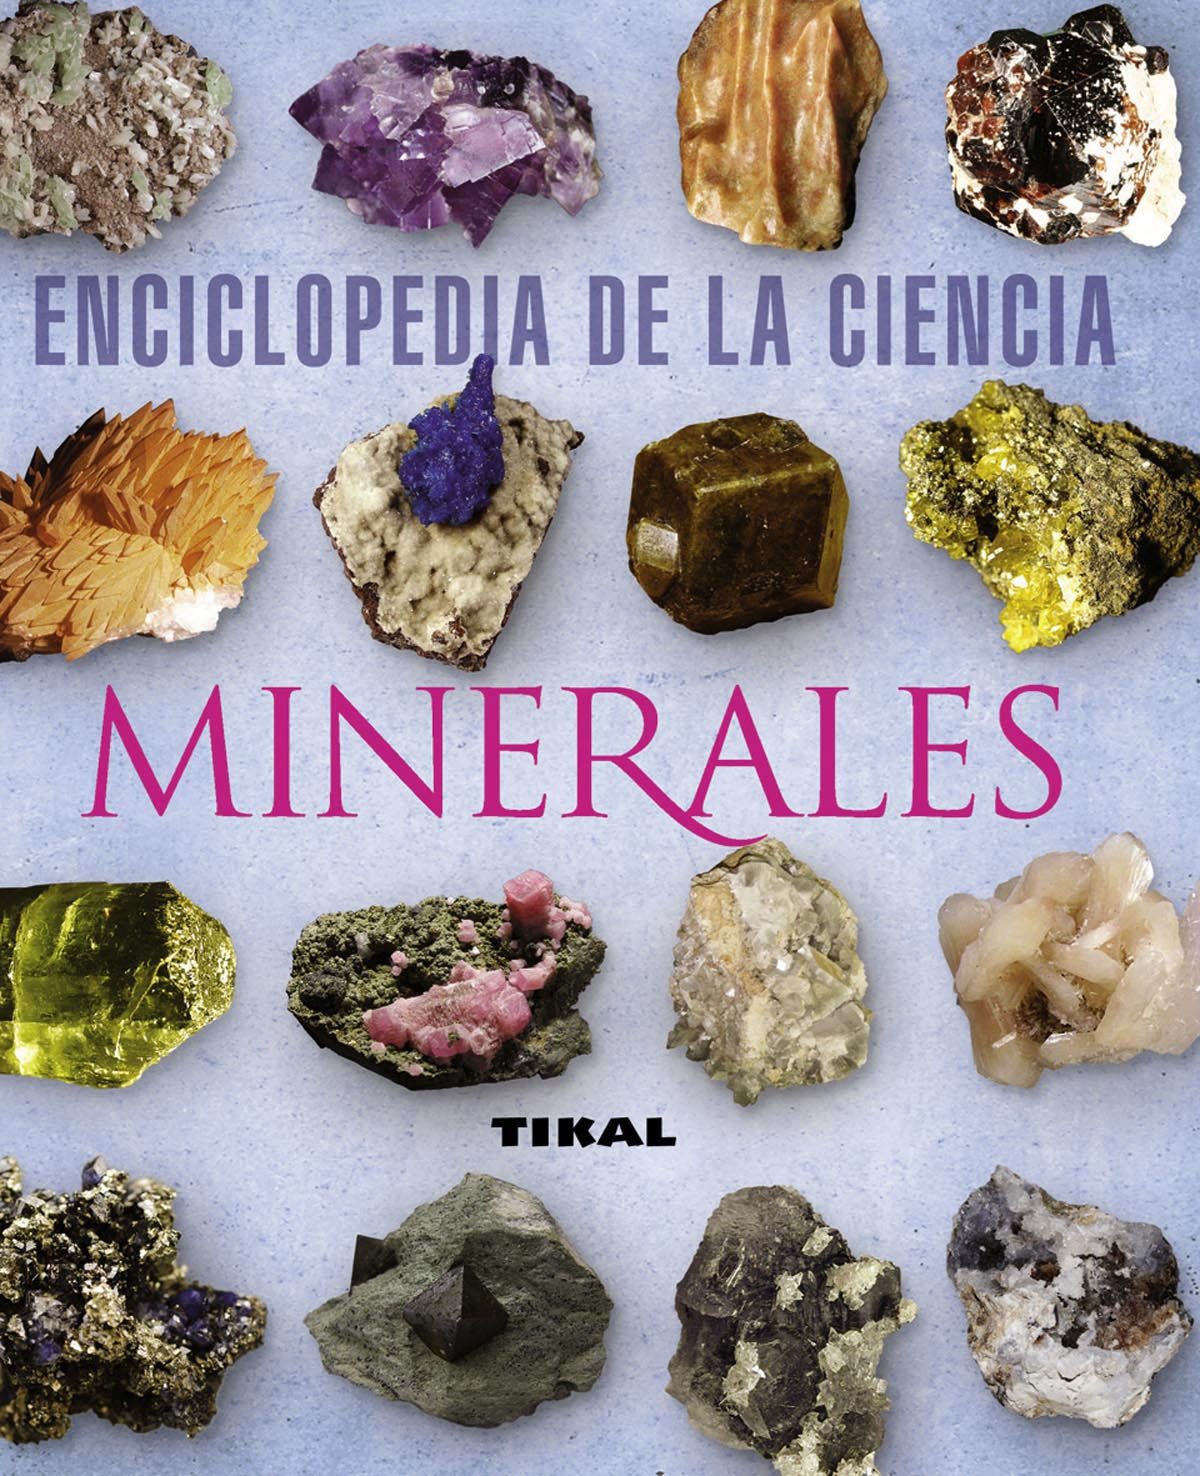 Álbumes 100+ Imagen Imagenes De Minerales Y Rocas Con Sus Nombres El último